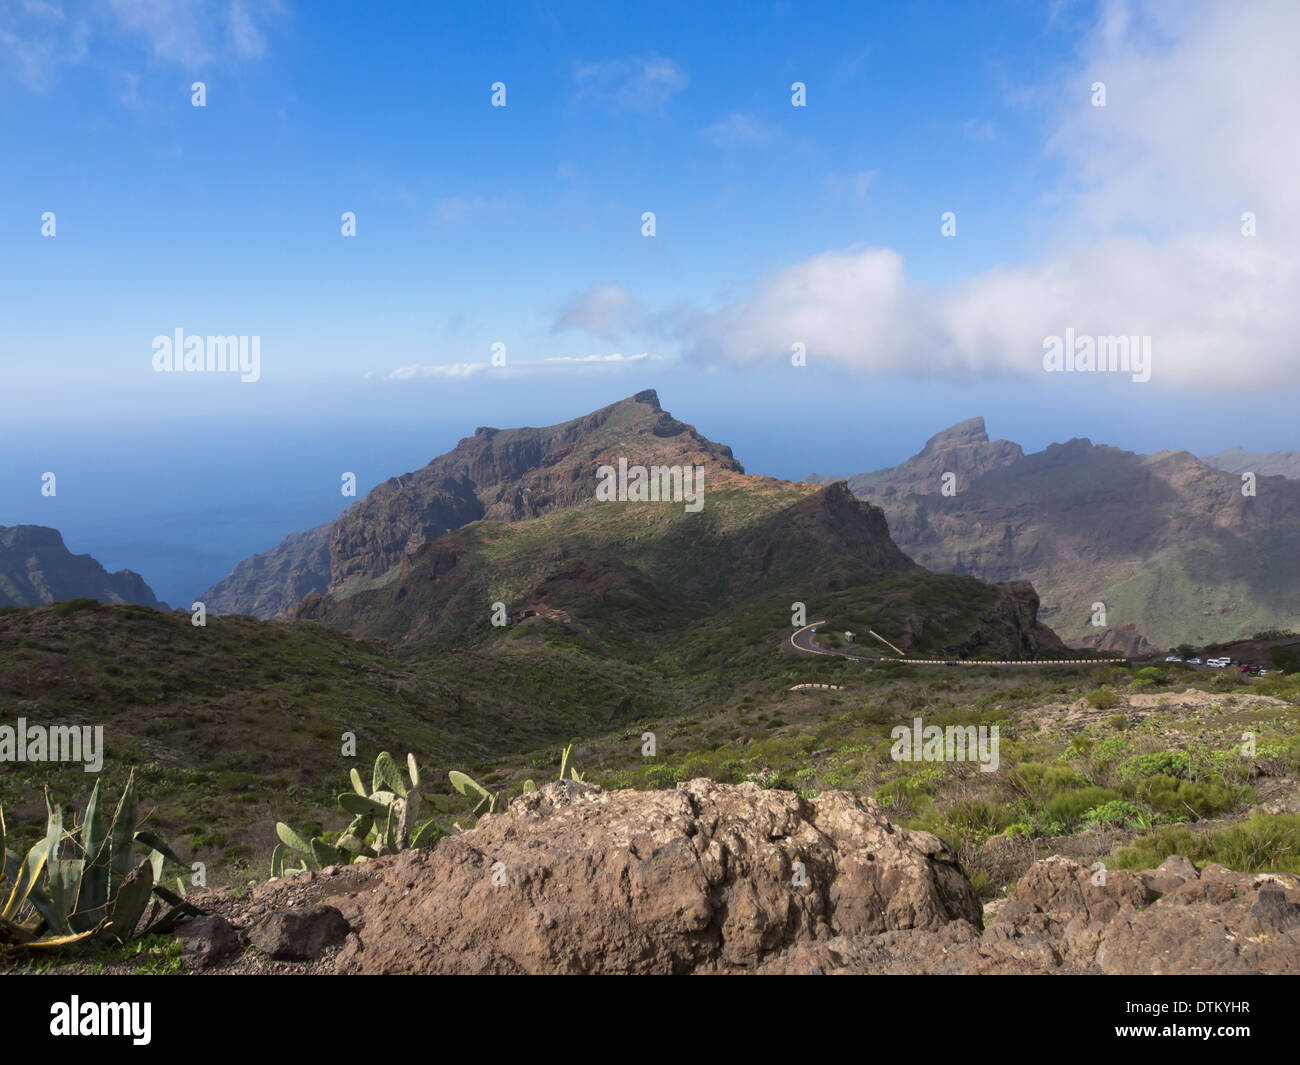 Point de vue sur la route de Masca, Tenerife Espagne, montagnes, virage en épingle, et la mer à l'horizon brumeux Banque D'Images